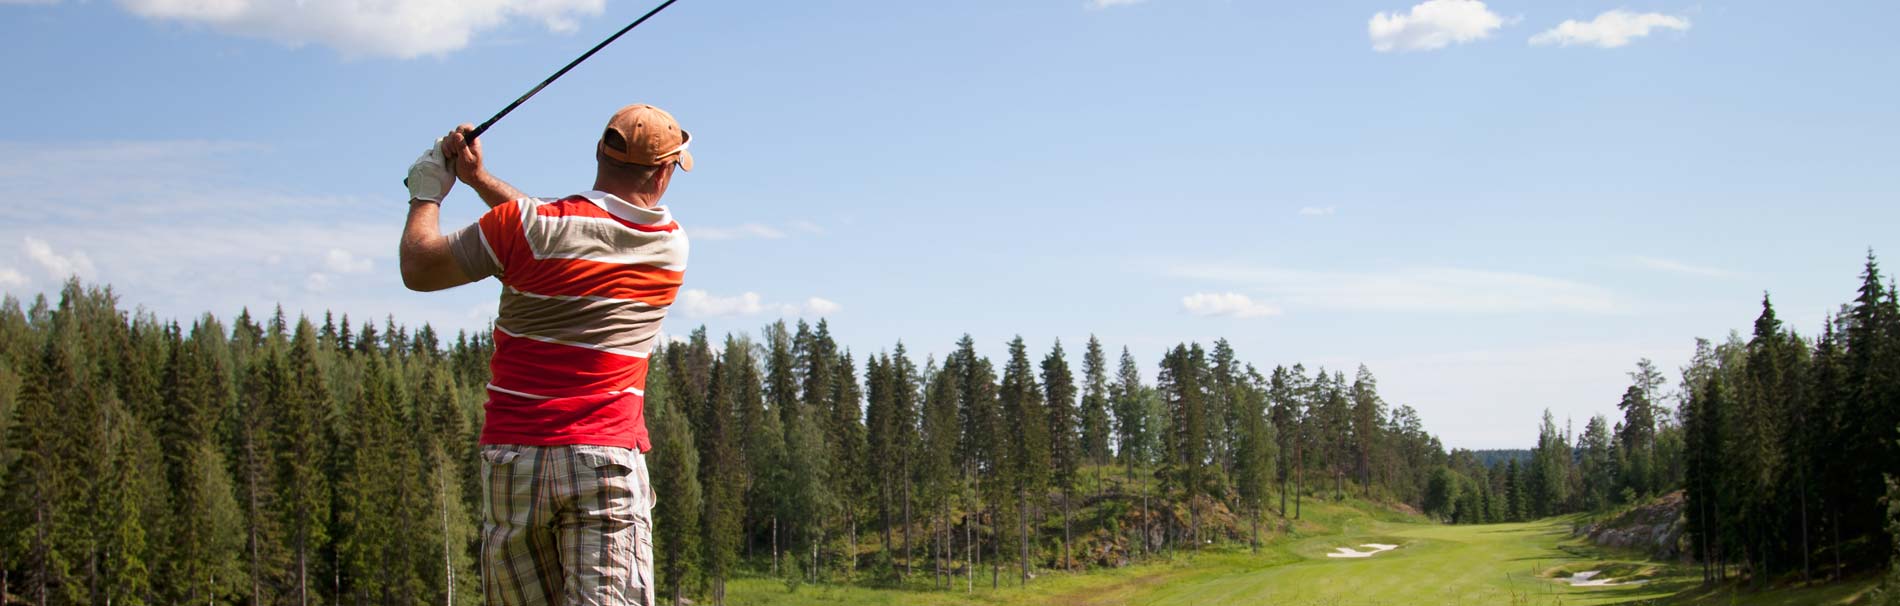 Golf-Sport im Bayerischen Wald